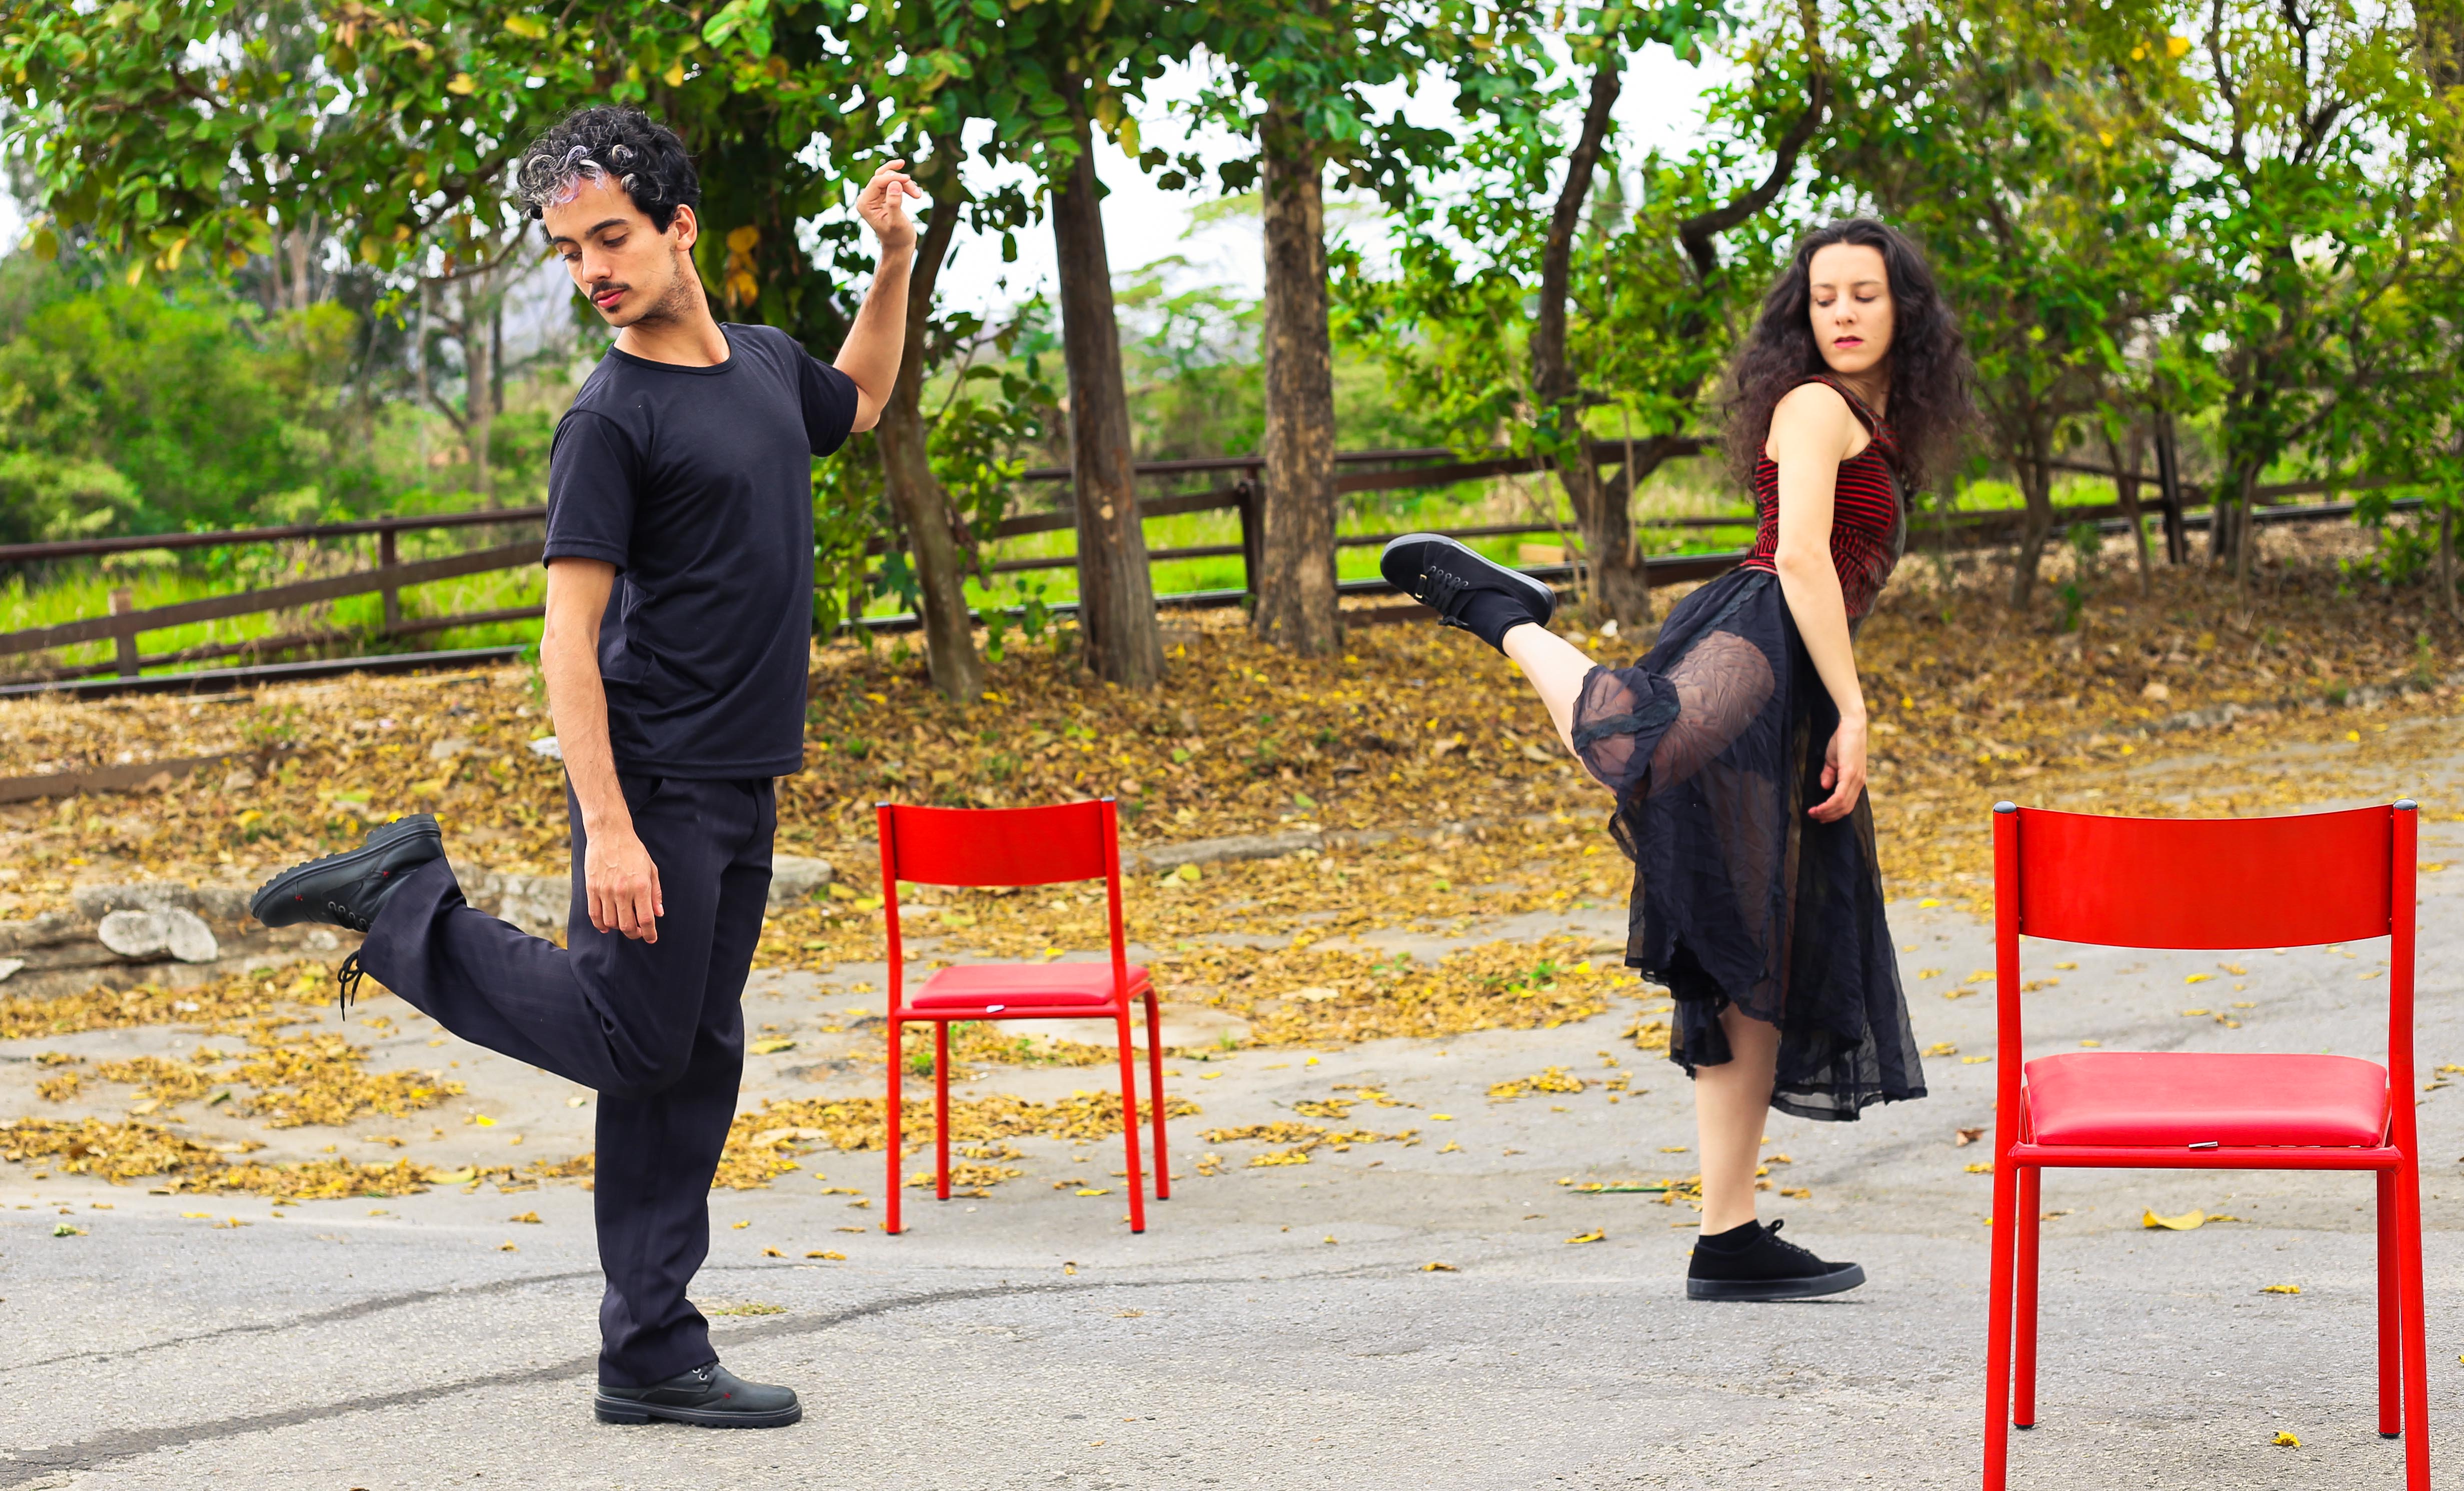 Espetáculo "Outono" - Direção Diego Matos e atuação de Júnio de Carvalho e Priscila Natany (Crédito: Priscila Natany)